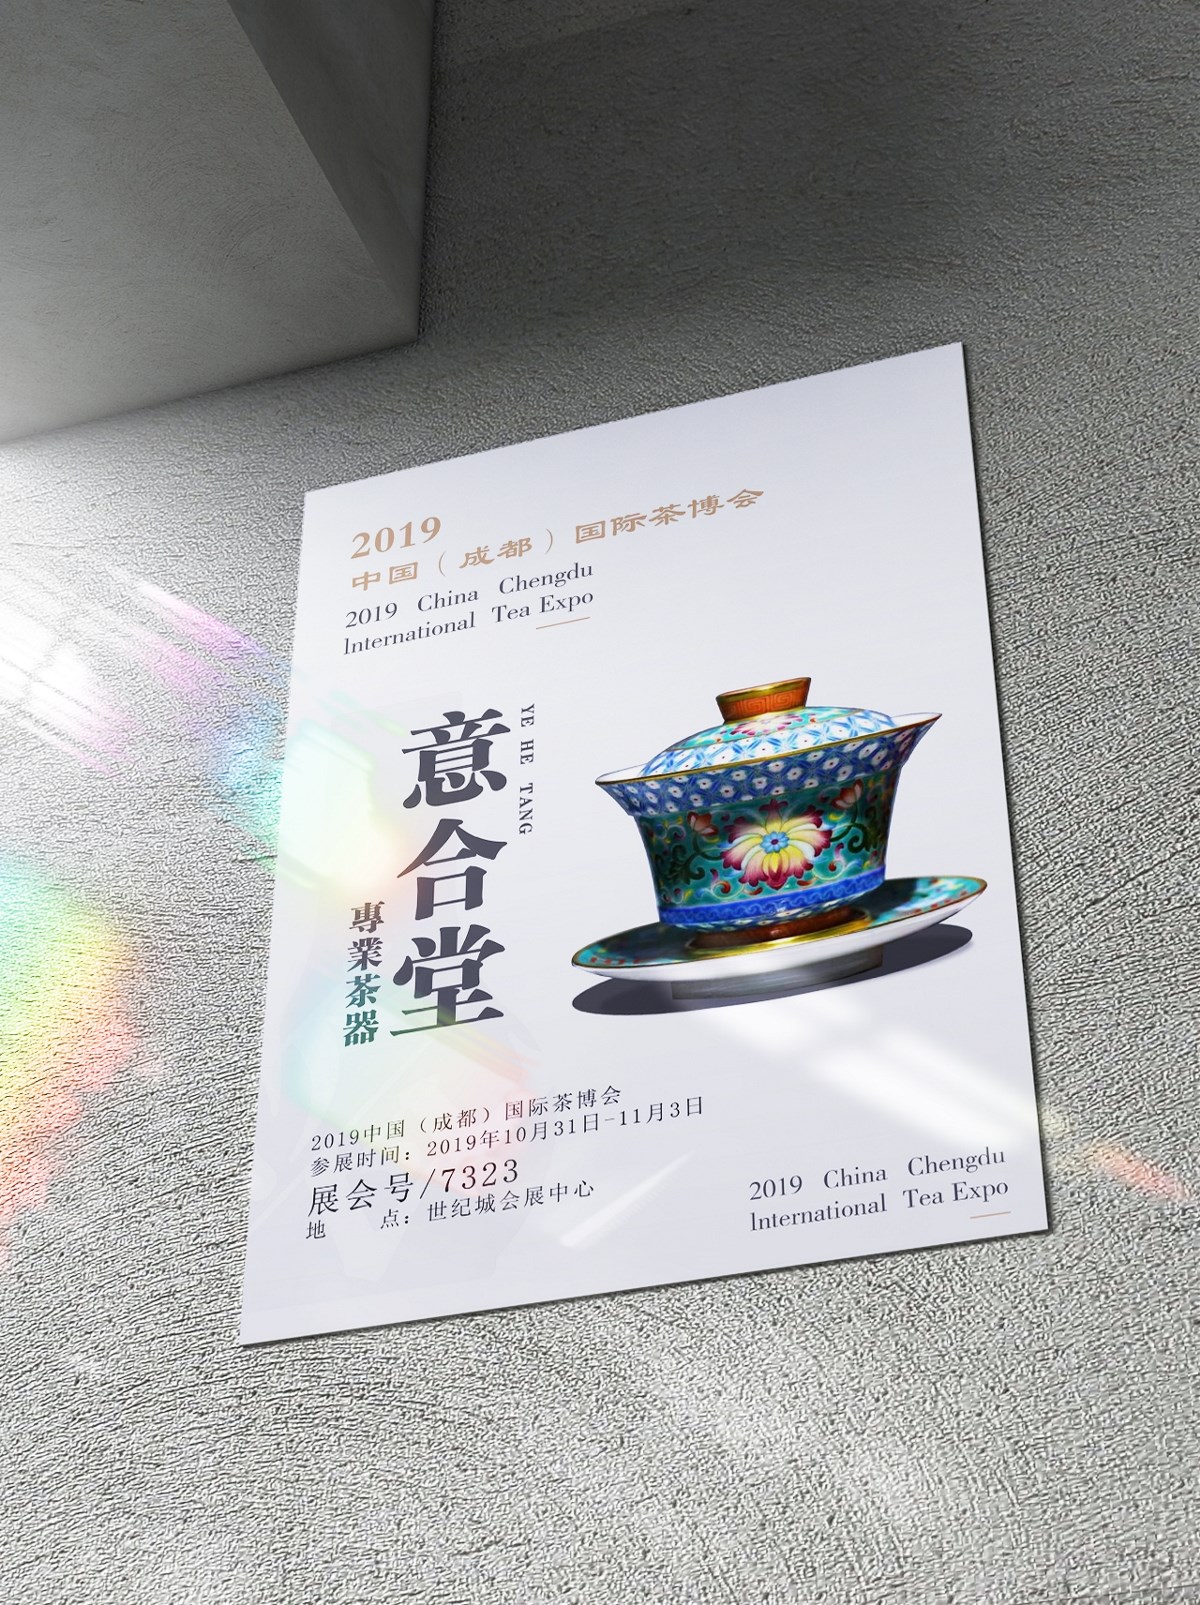 陶瓷瓷器四折页设计 博览会展会宣传海报设计